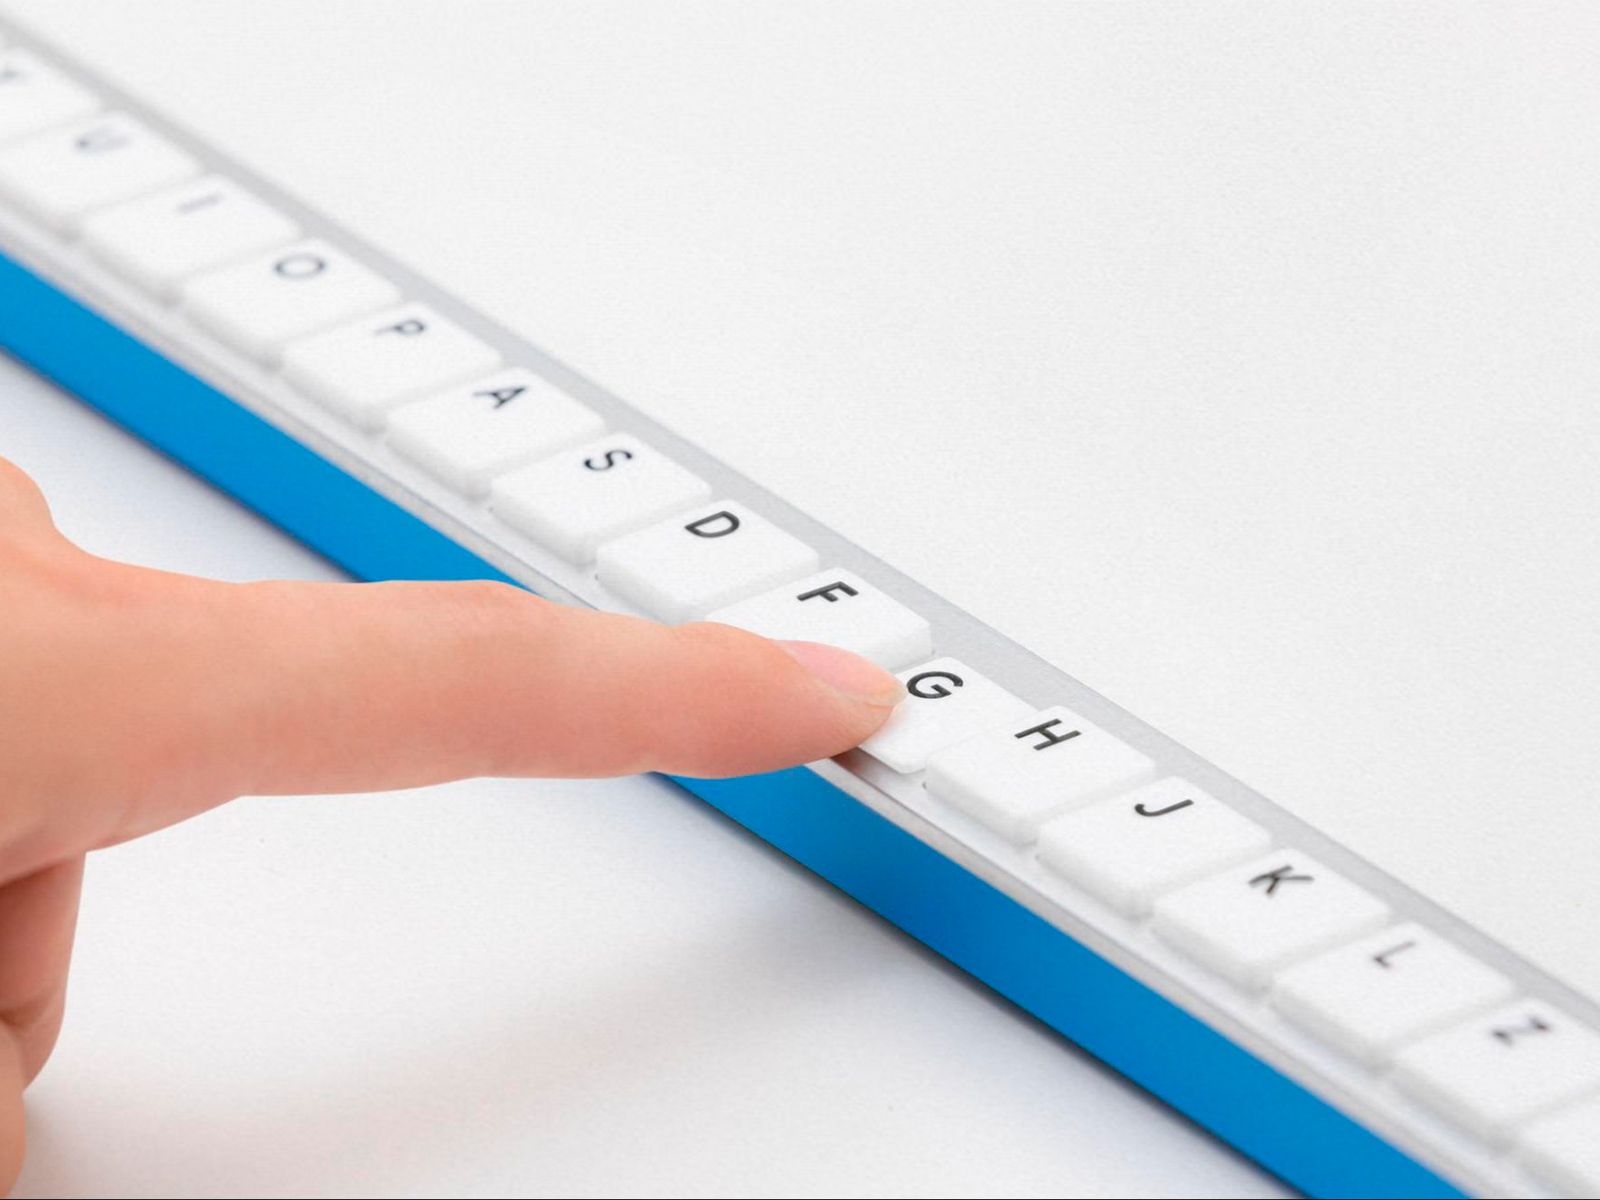 Así es el G-Board, el teclado diseñado por Google Japón que mide 1,5 metros